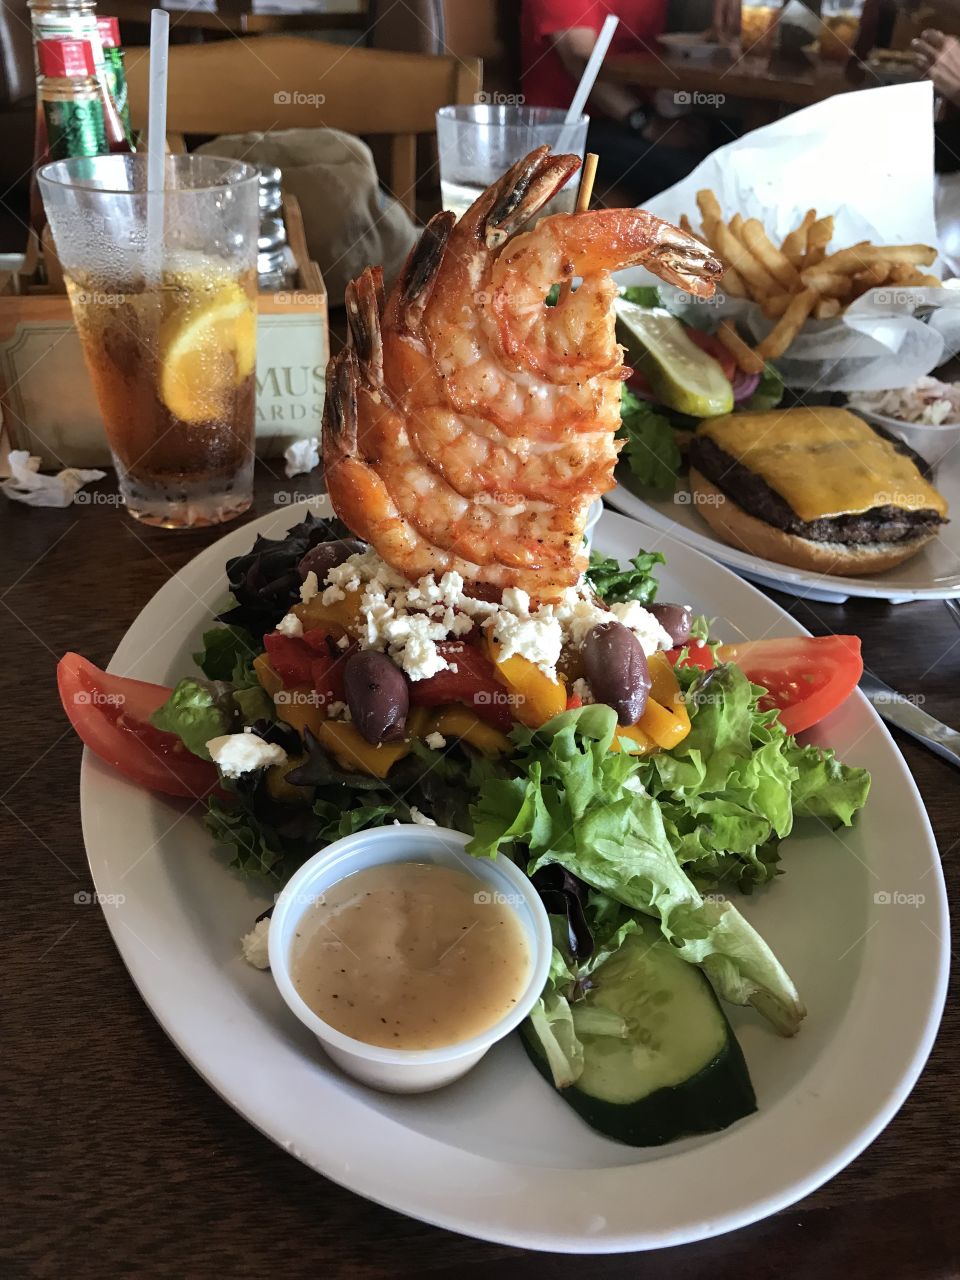 Look how tall my shrimp salad is!